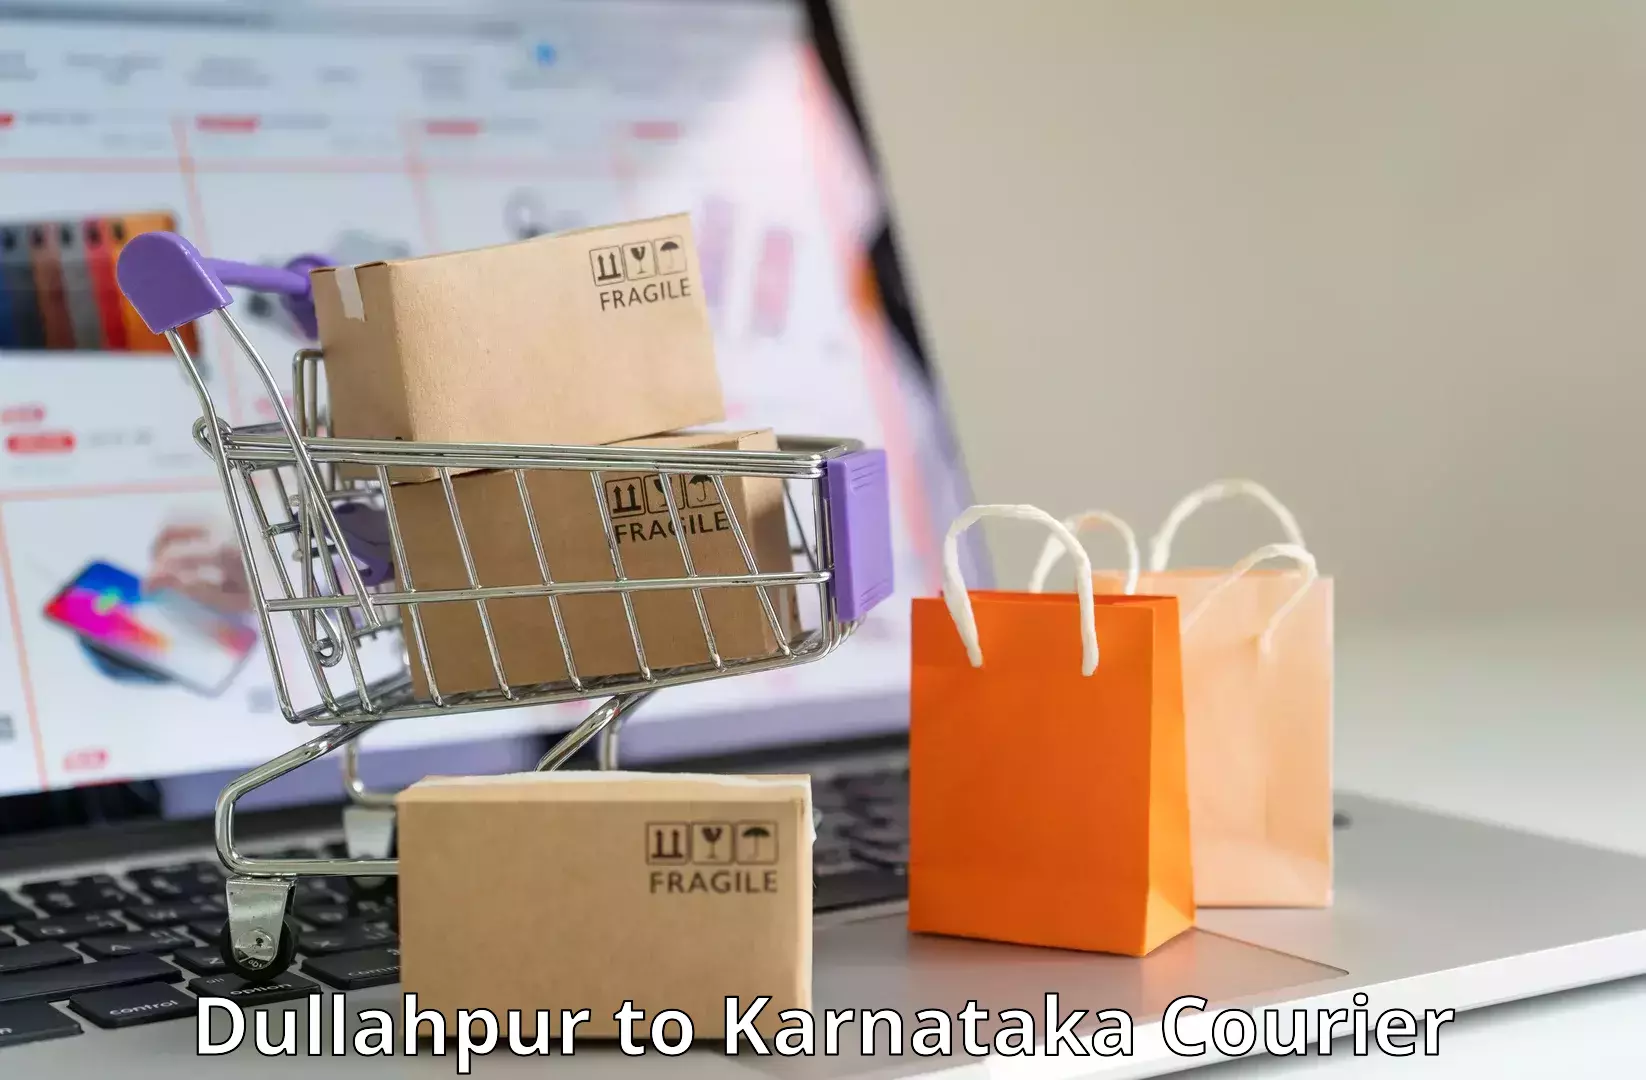 Express package handling Dullahpur to Basavanagudi